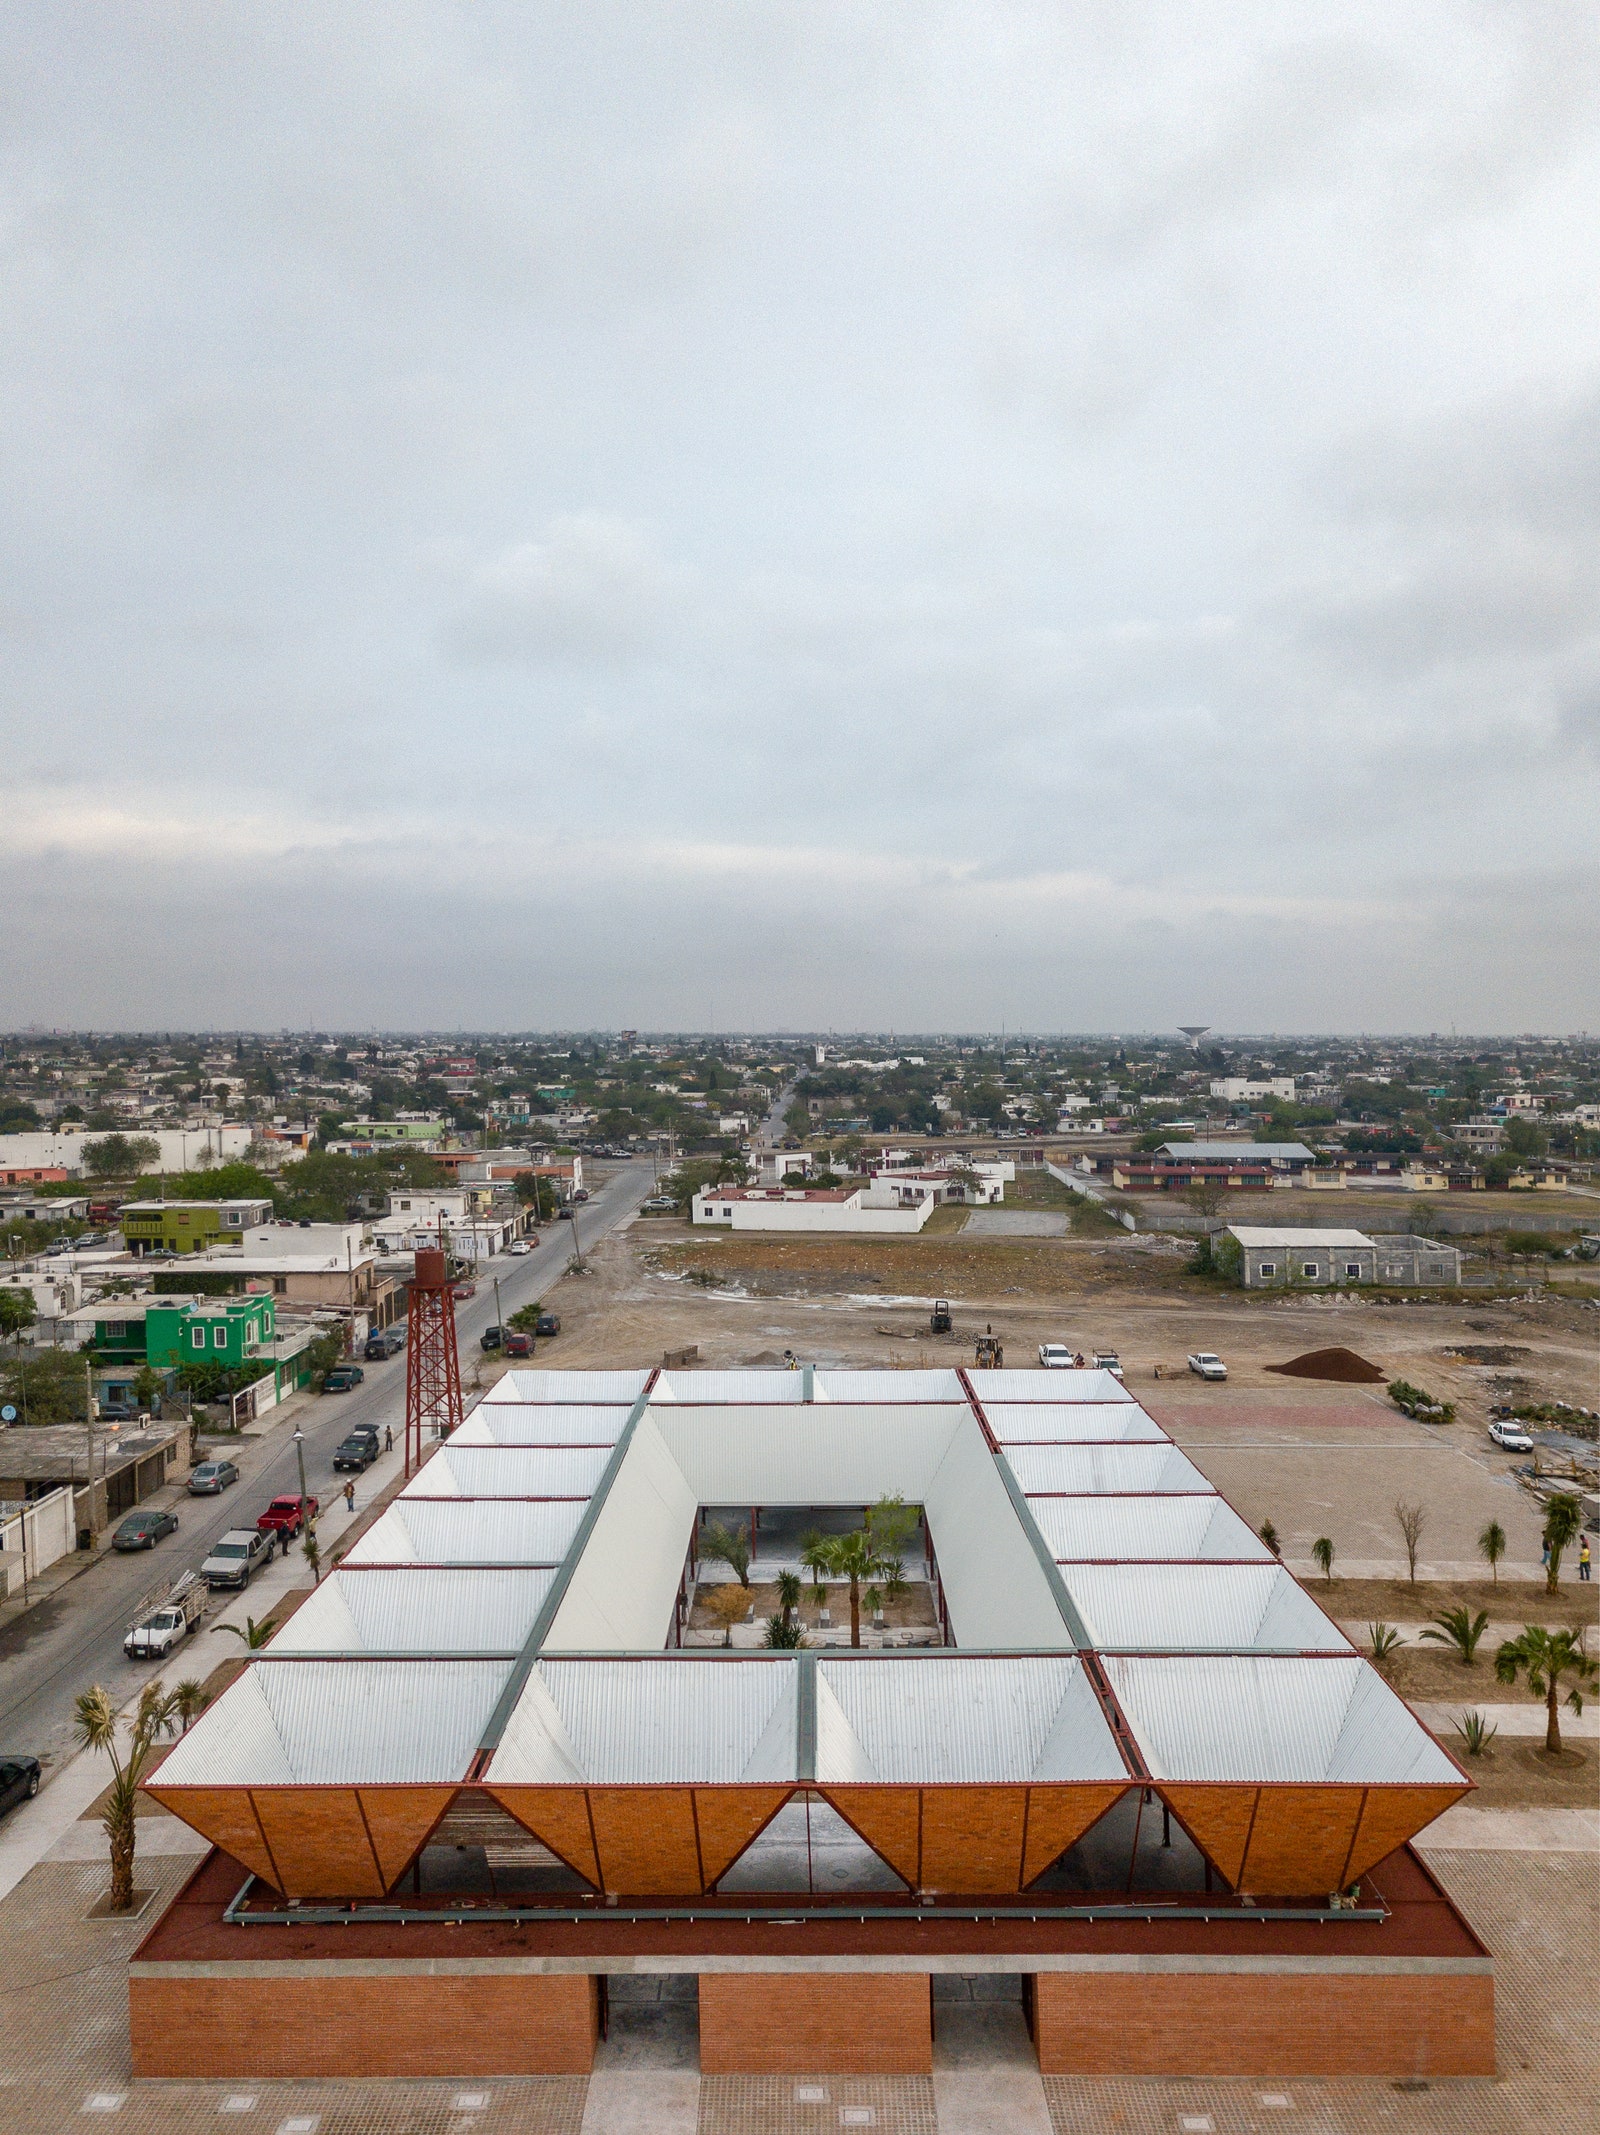 Кирпичный торговый центр в Мексике